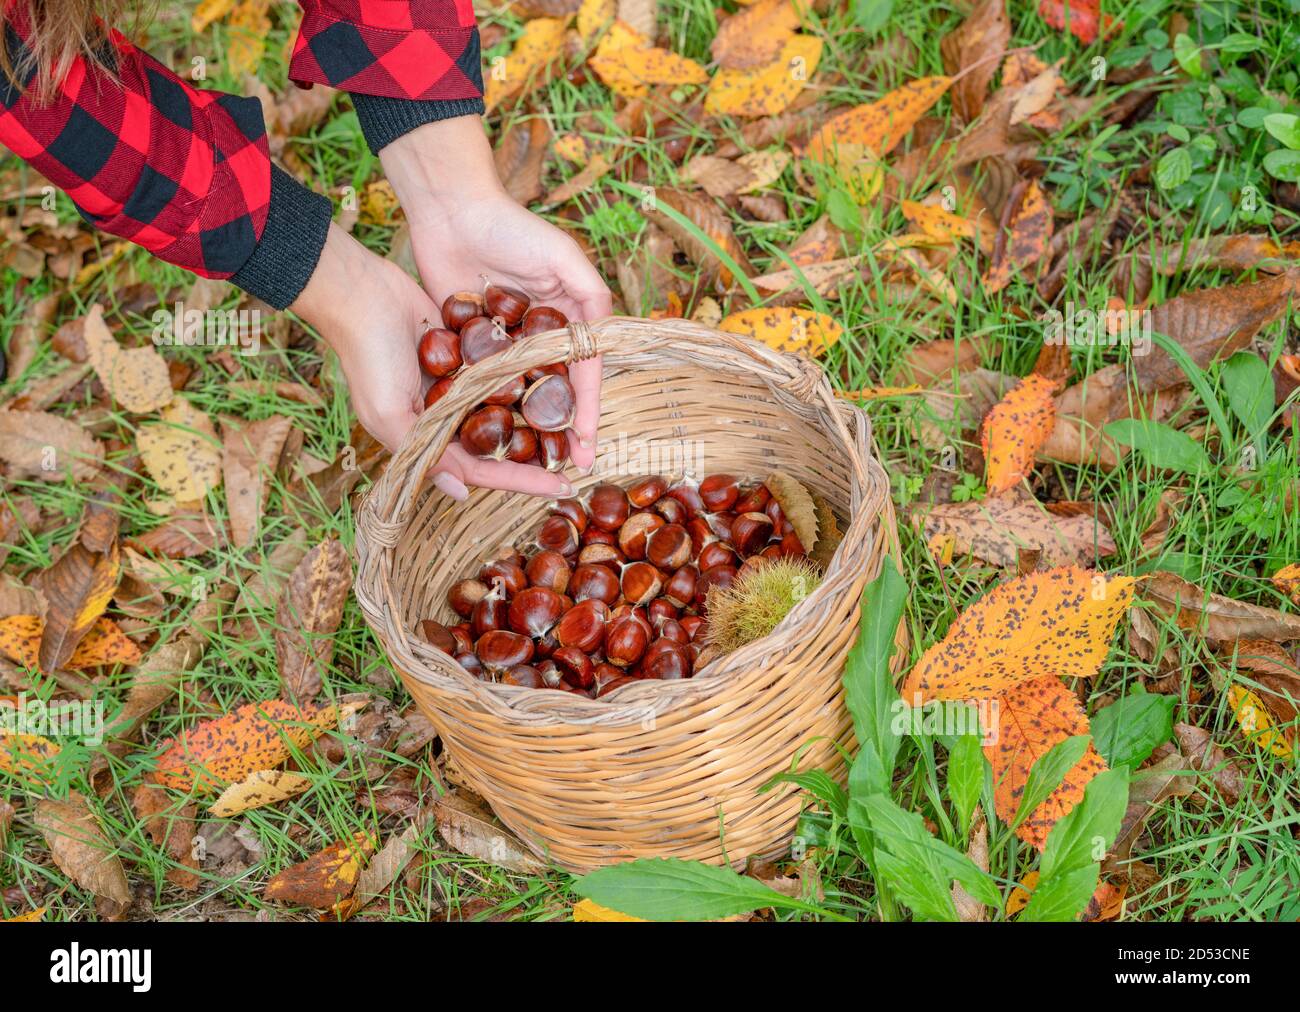 Frau sammelt einen Korb von Kastanien im Wald, sardische Kastanien, aritzo Stockfoto